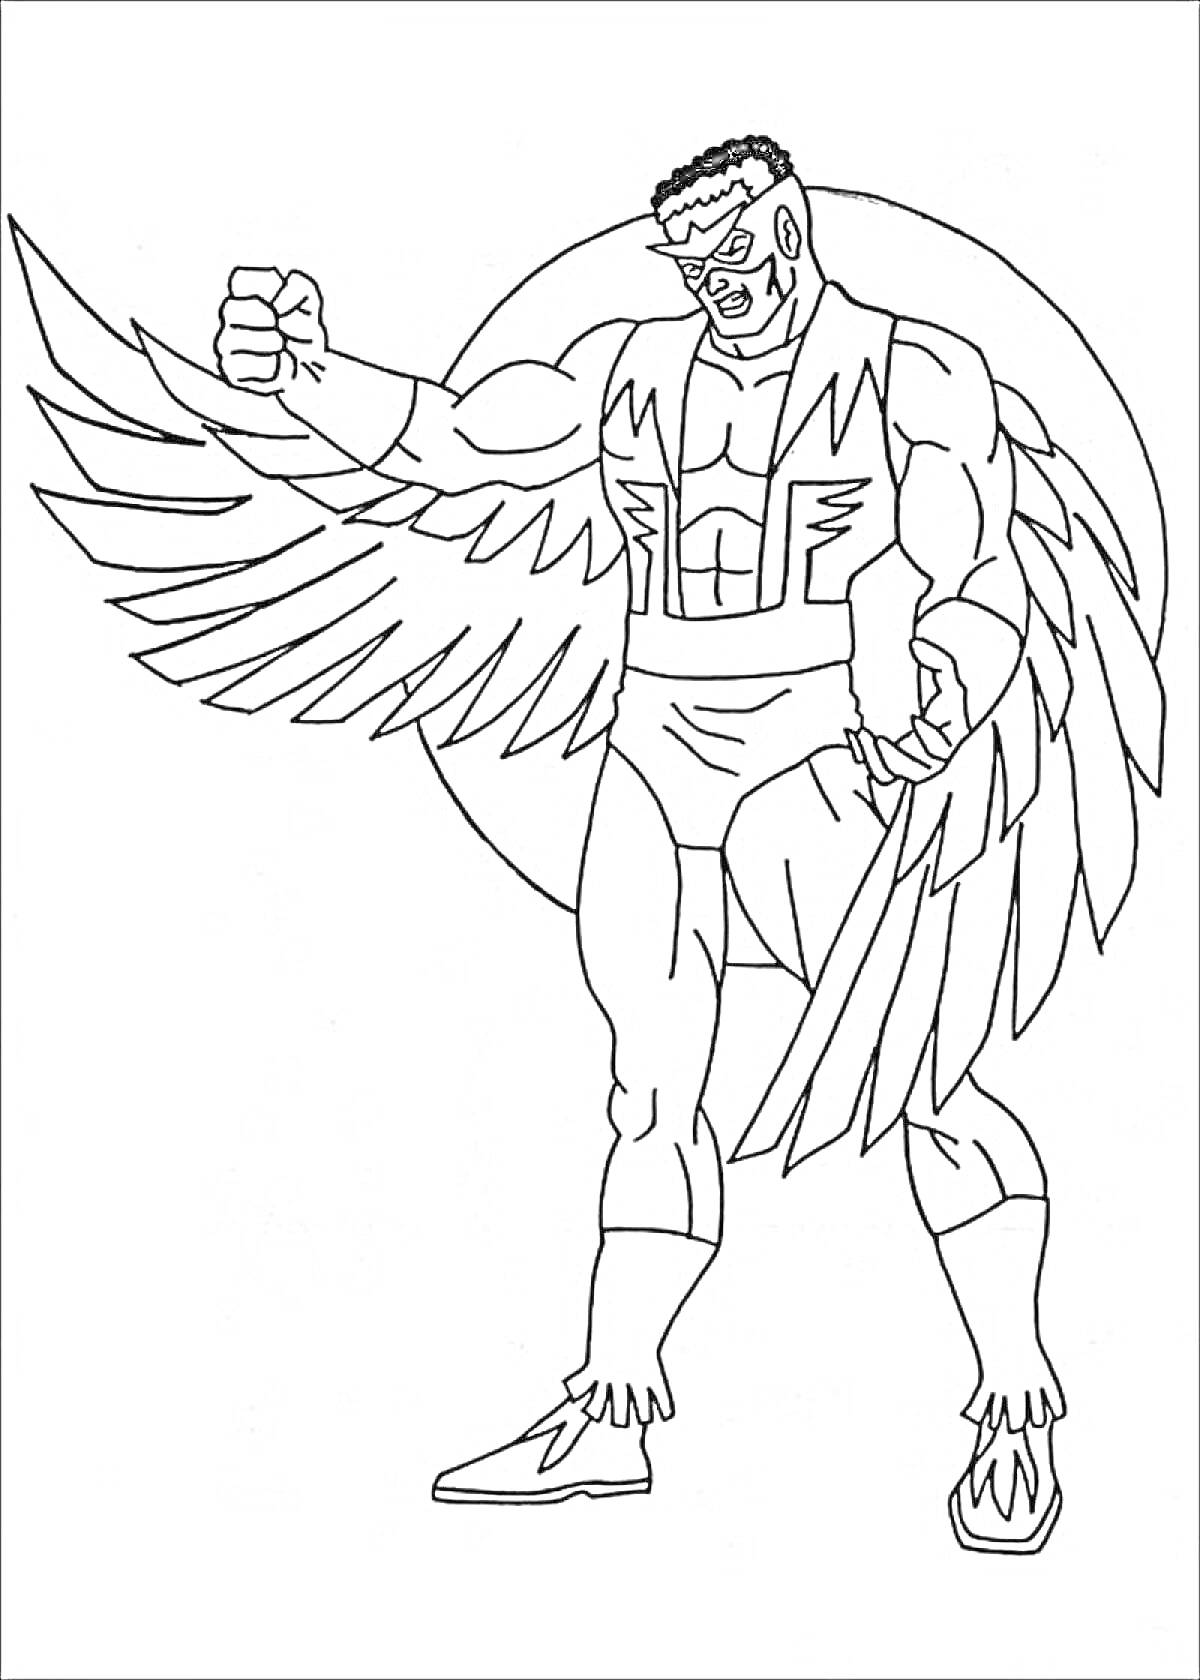 Раскраска Супергерой с крыльями, маской и крепким телосложением